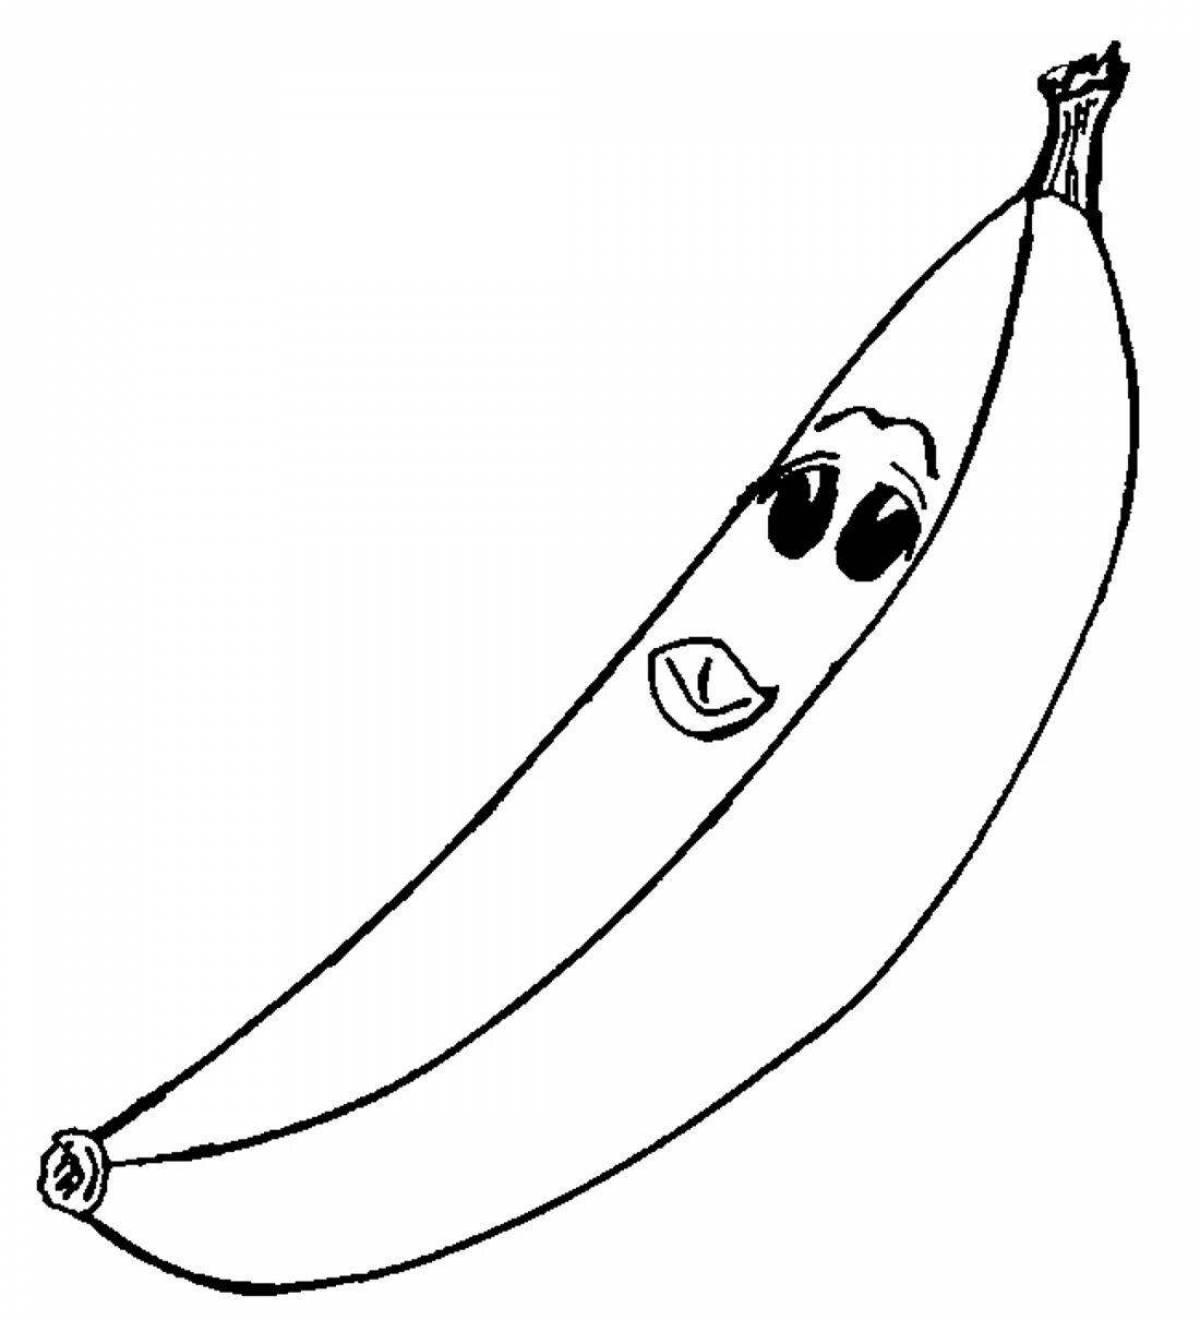 Playful banana coloring page